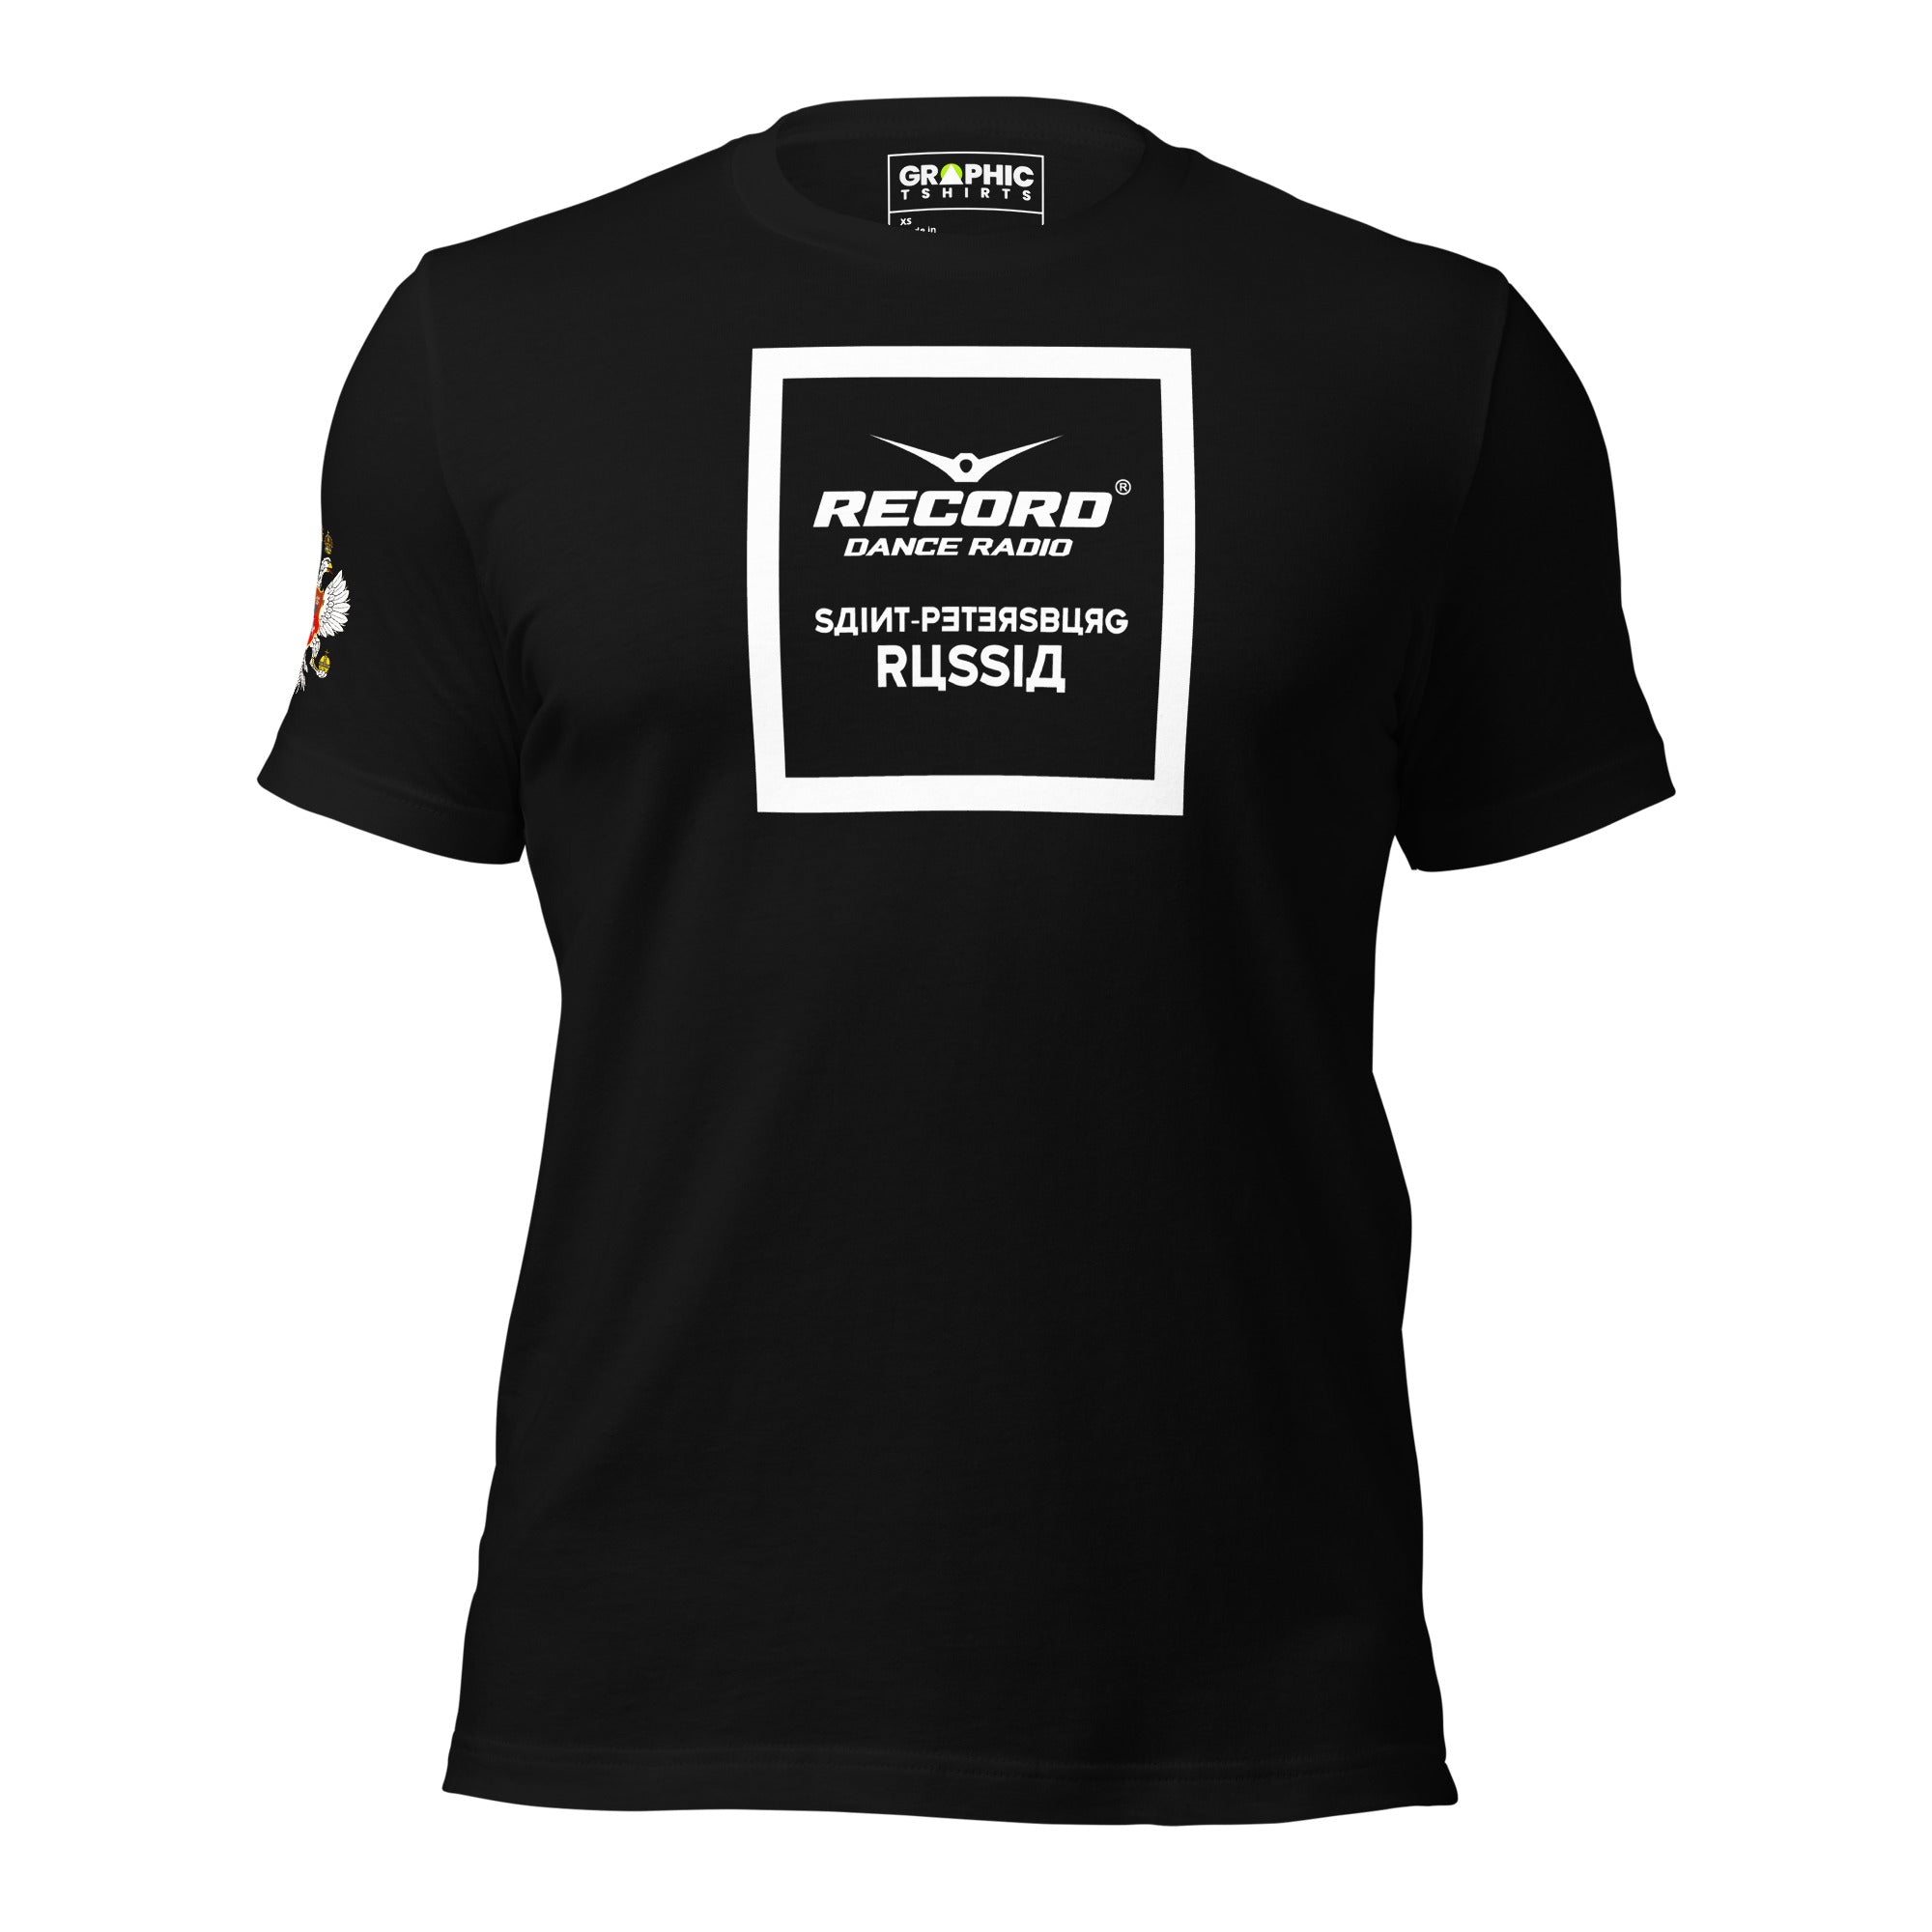 Unisex Staple T-Shirt - Record Dance Radio Saint-Petersburg Russia - GRAPHIC T-SHIRTS